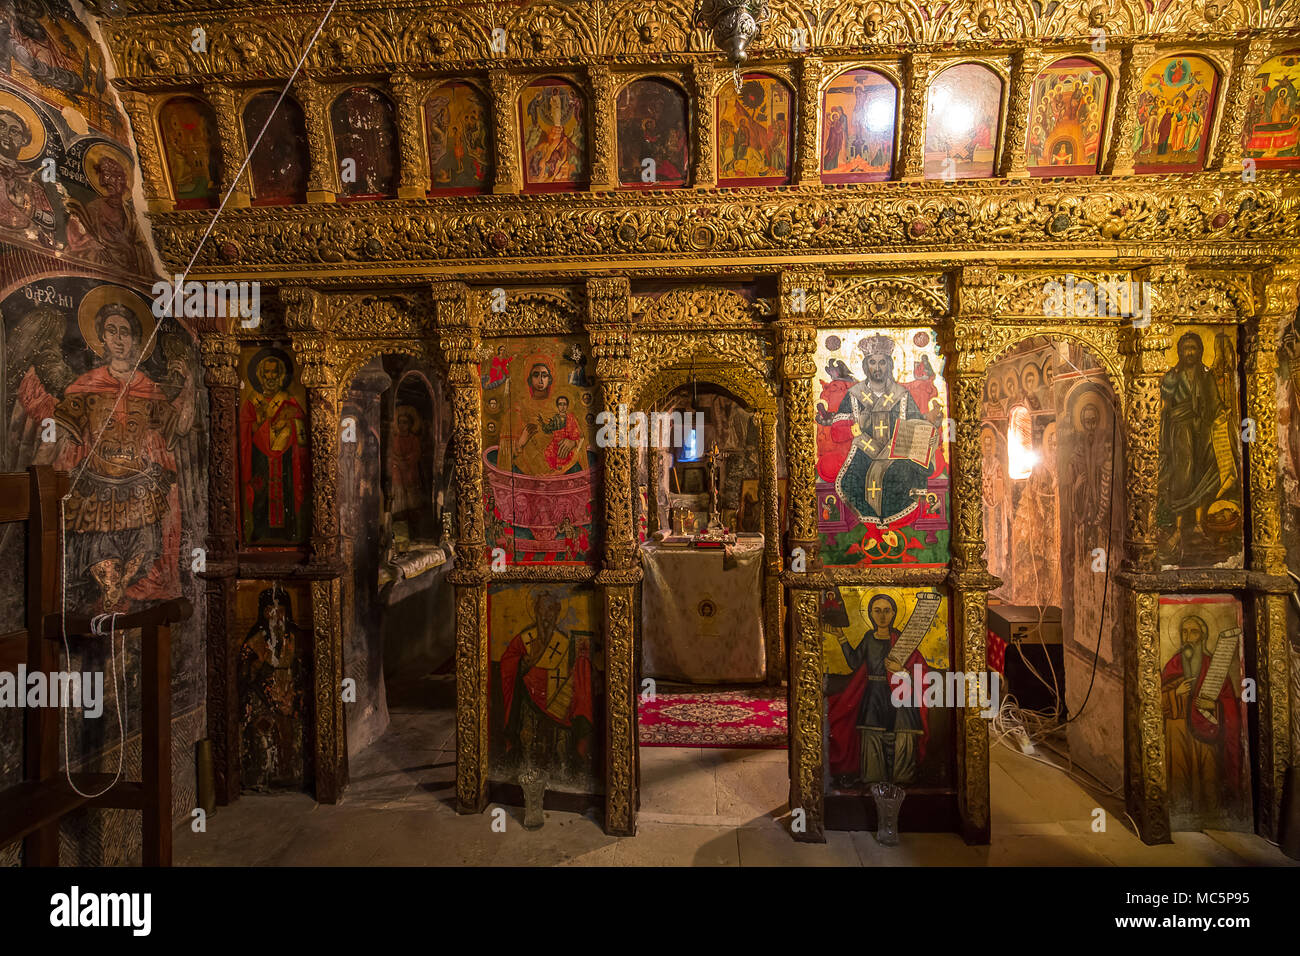 ITILO, Griechenland, 16. SEPTEMBER 2017: Fresken im Kloster von Dekoulon, 16. September 2017, in Itilo Peloponnes, Griechenland Stockfoto